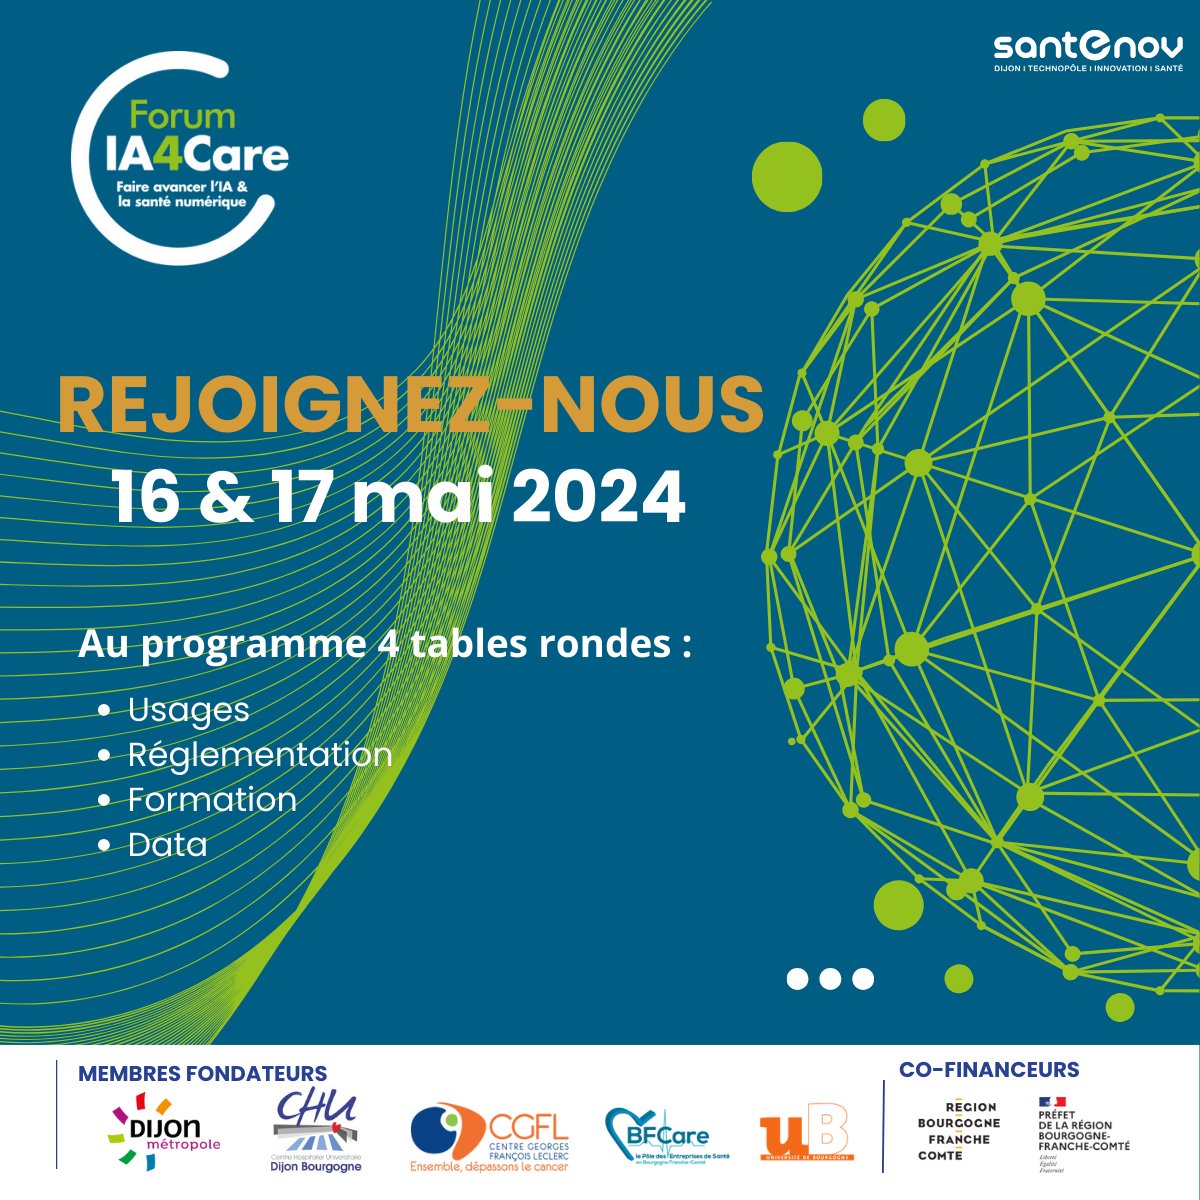 📅 [Save the date] Le Forum IA4Care organisé par la technopole de Dijon @santenov revient pour une 3ème édition les 16 et 17 mai prochains. 👉 Informations et inscription sur Buzz E-santé : buzz-esante.fr/forum-ia4care-… #ForumIA4Care #esante #innovation #hcsmeufr